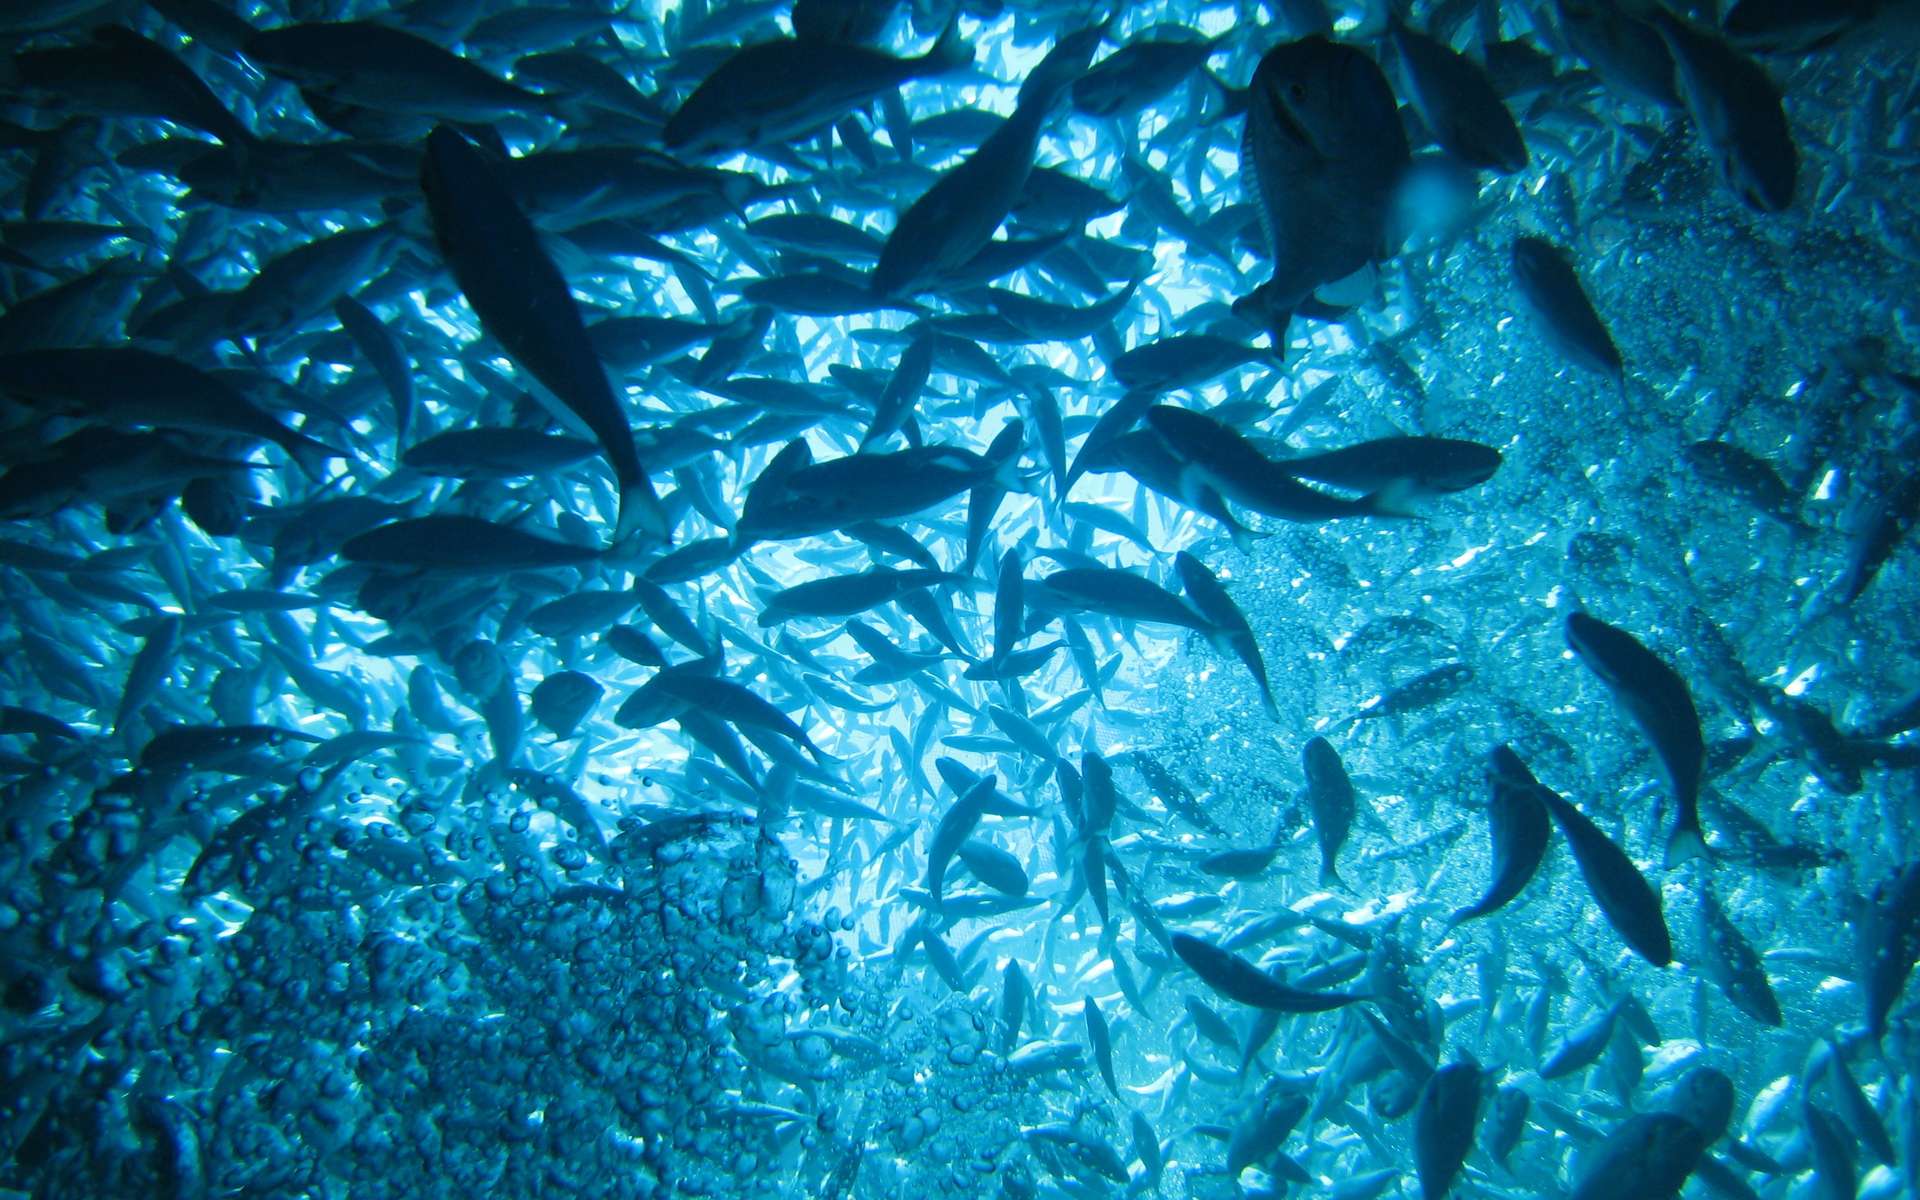 Les ressources alimentaires de l’océan demeurent largement sous-exploitées. © chiccaderrico, Adobe Stock